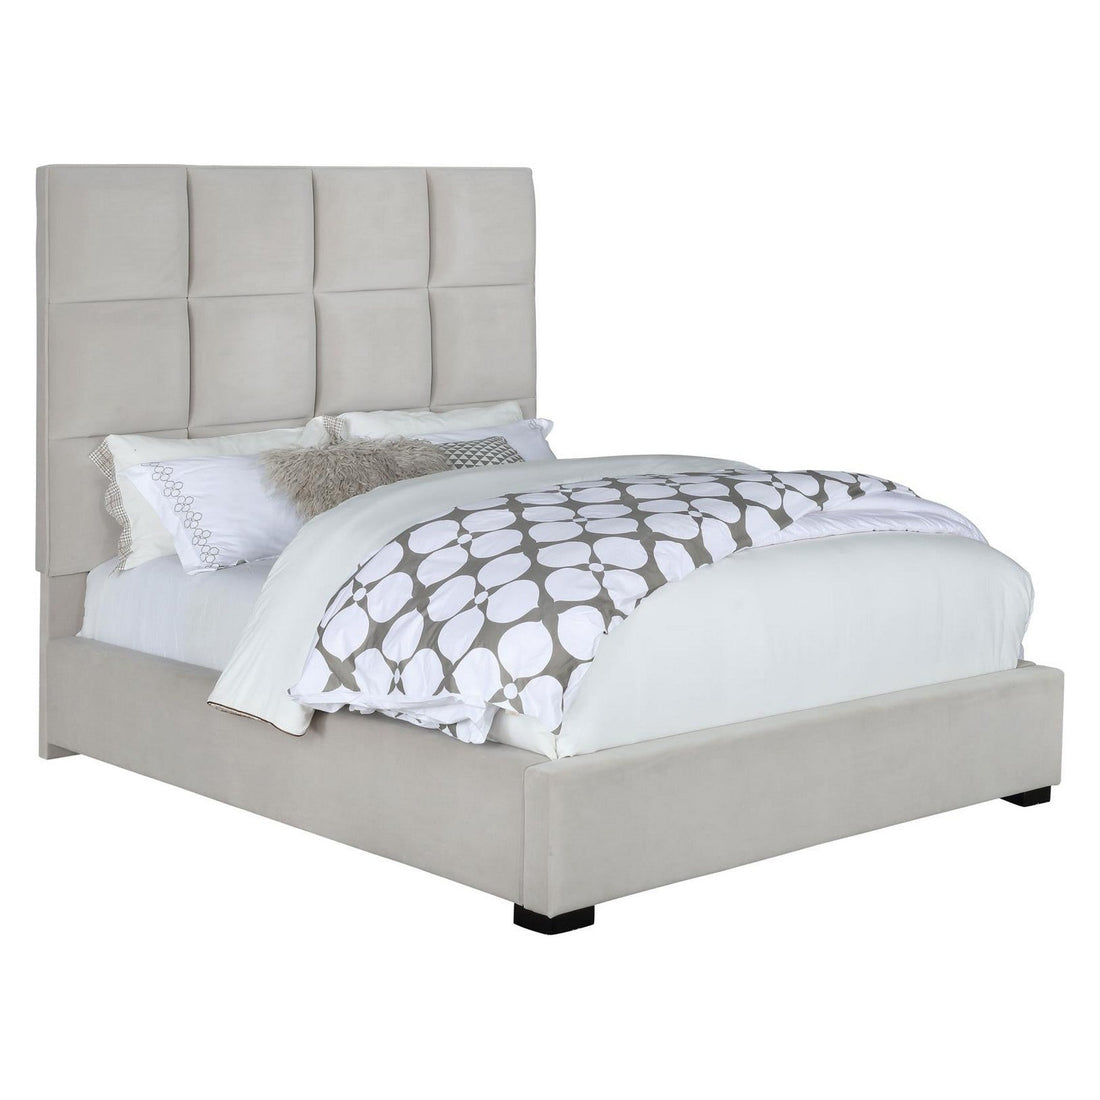 Panes Eastern King Tufted Upholstered Panel Bed Beige 315850KE